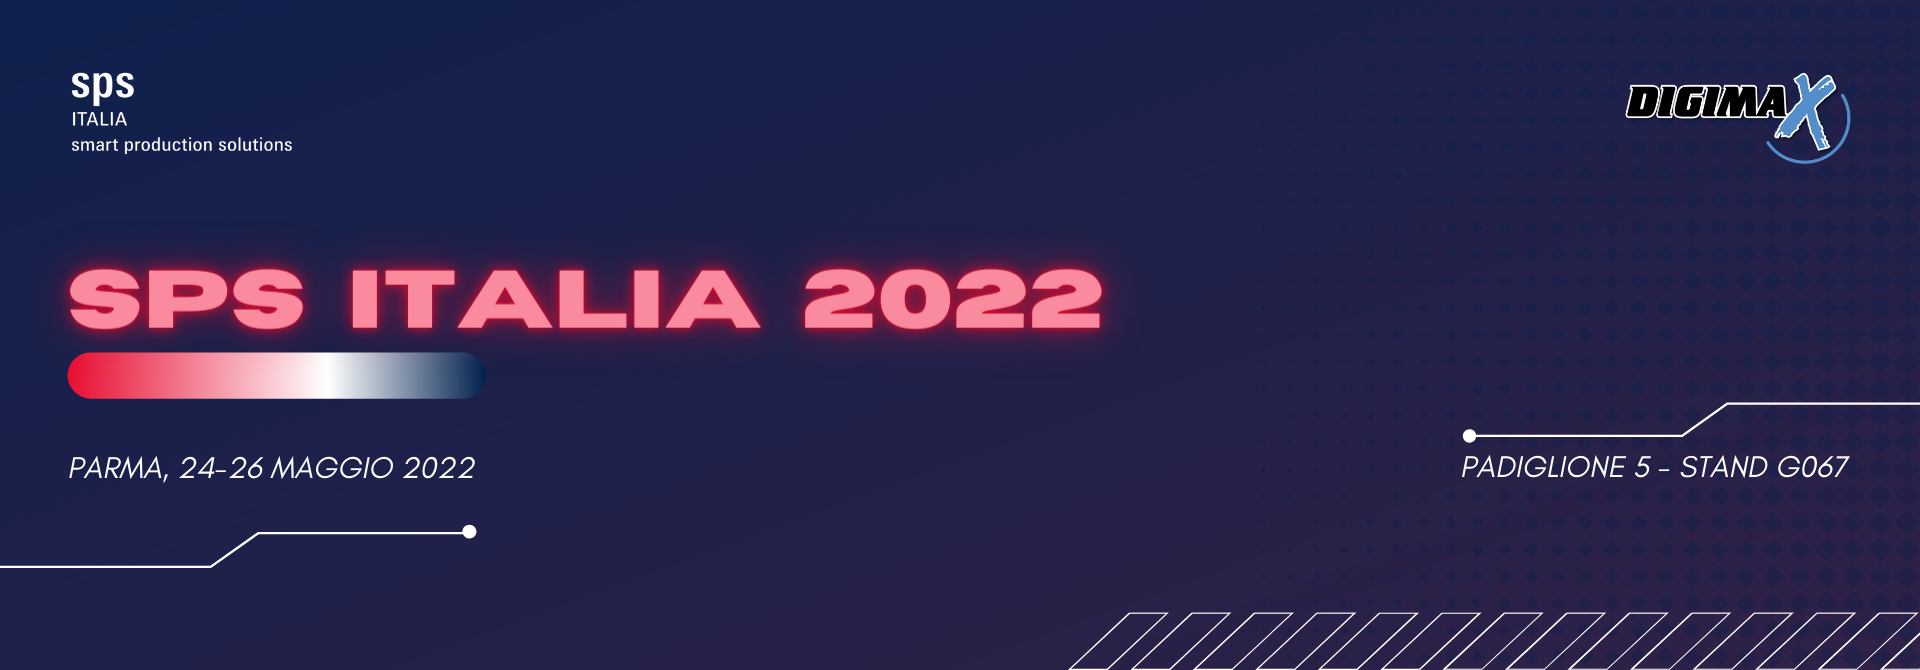 SPS 2022 è l'evento italiano dedicato all'automazione per l'Industria